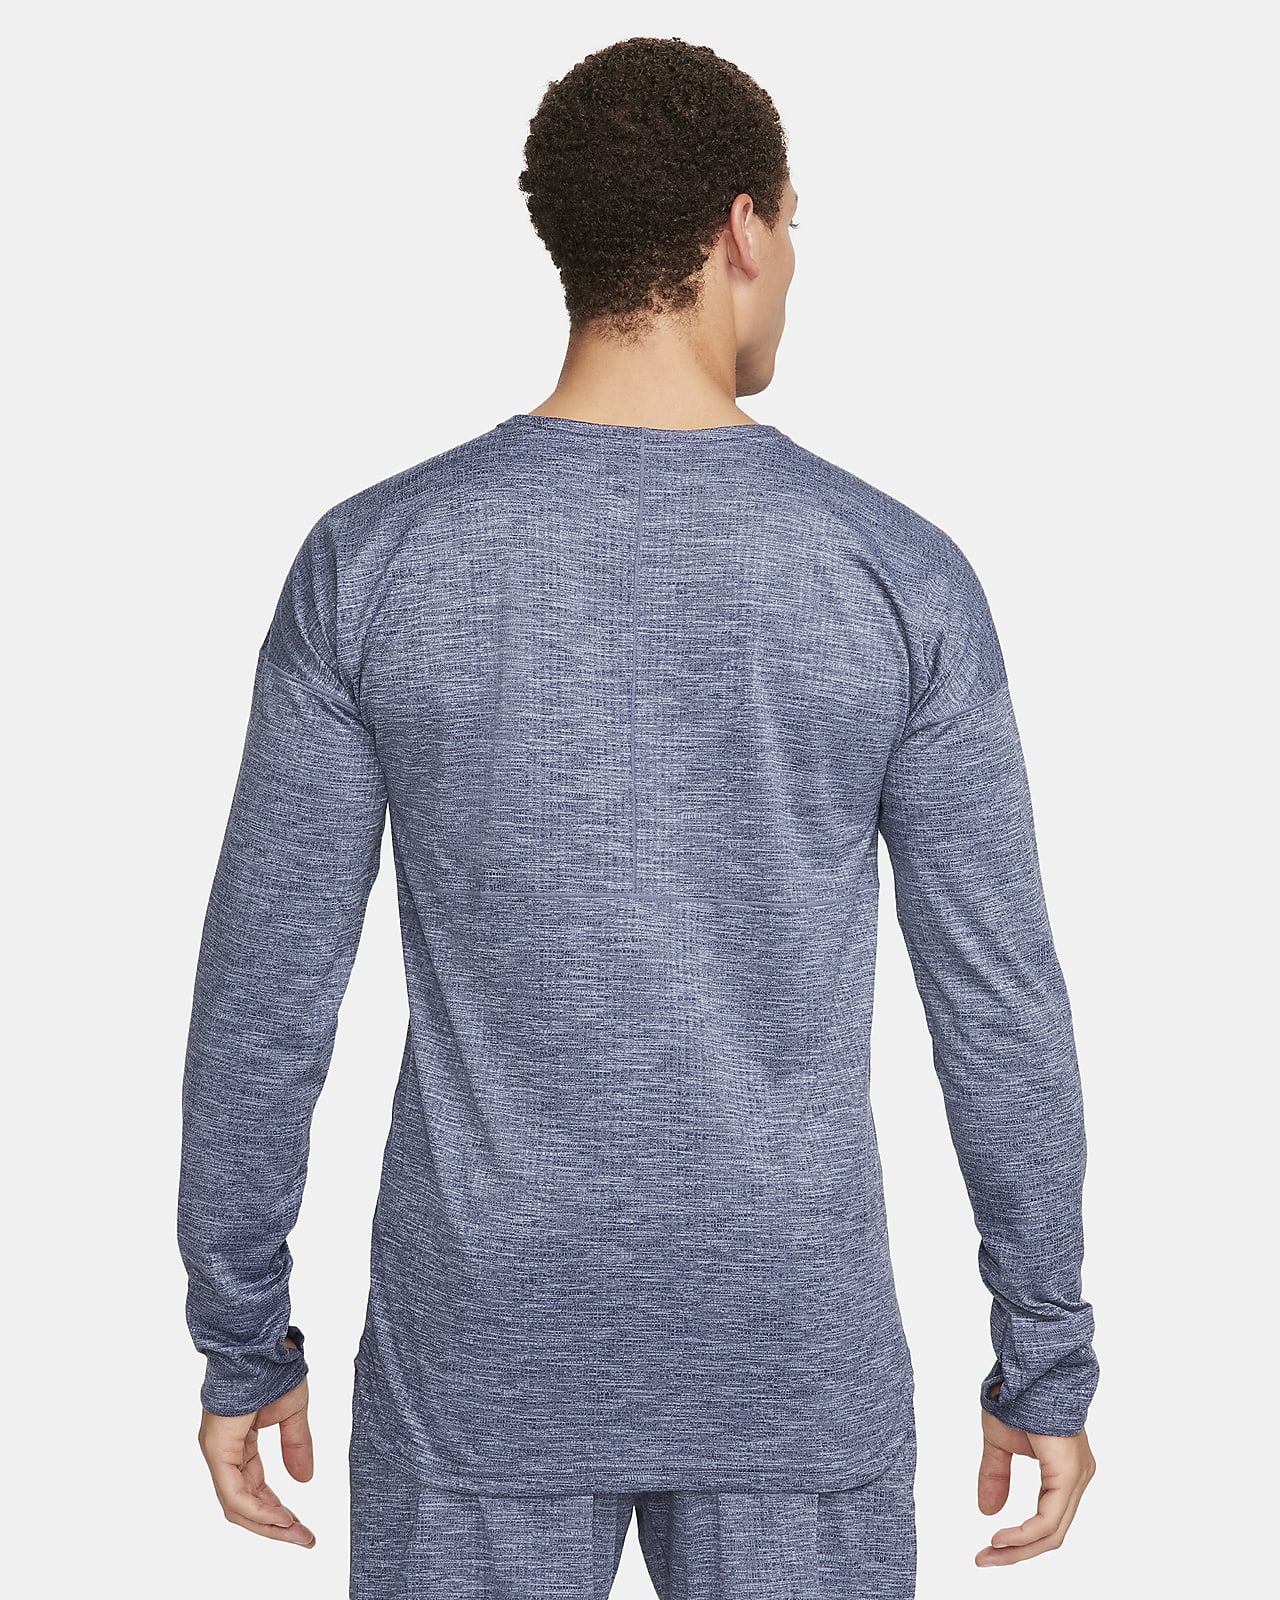 Buy Nike Yoga Printed Dri-fit T-shirt S - Blue At 50% Off